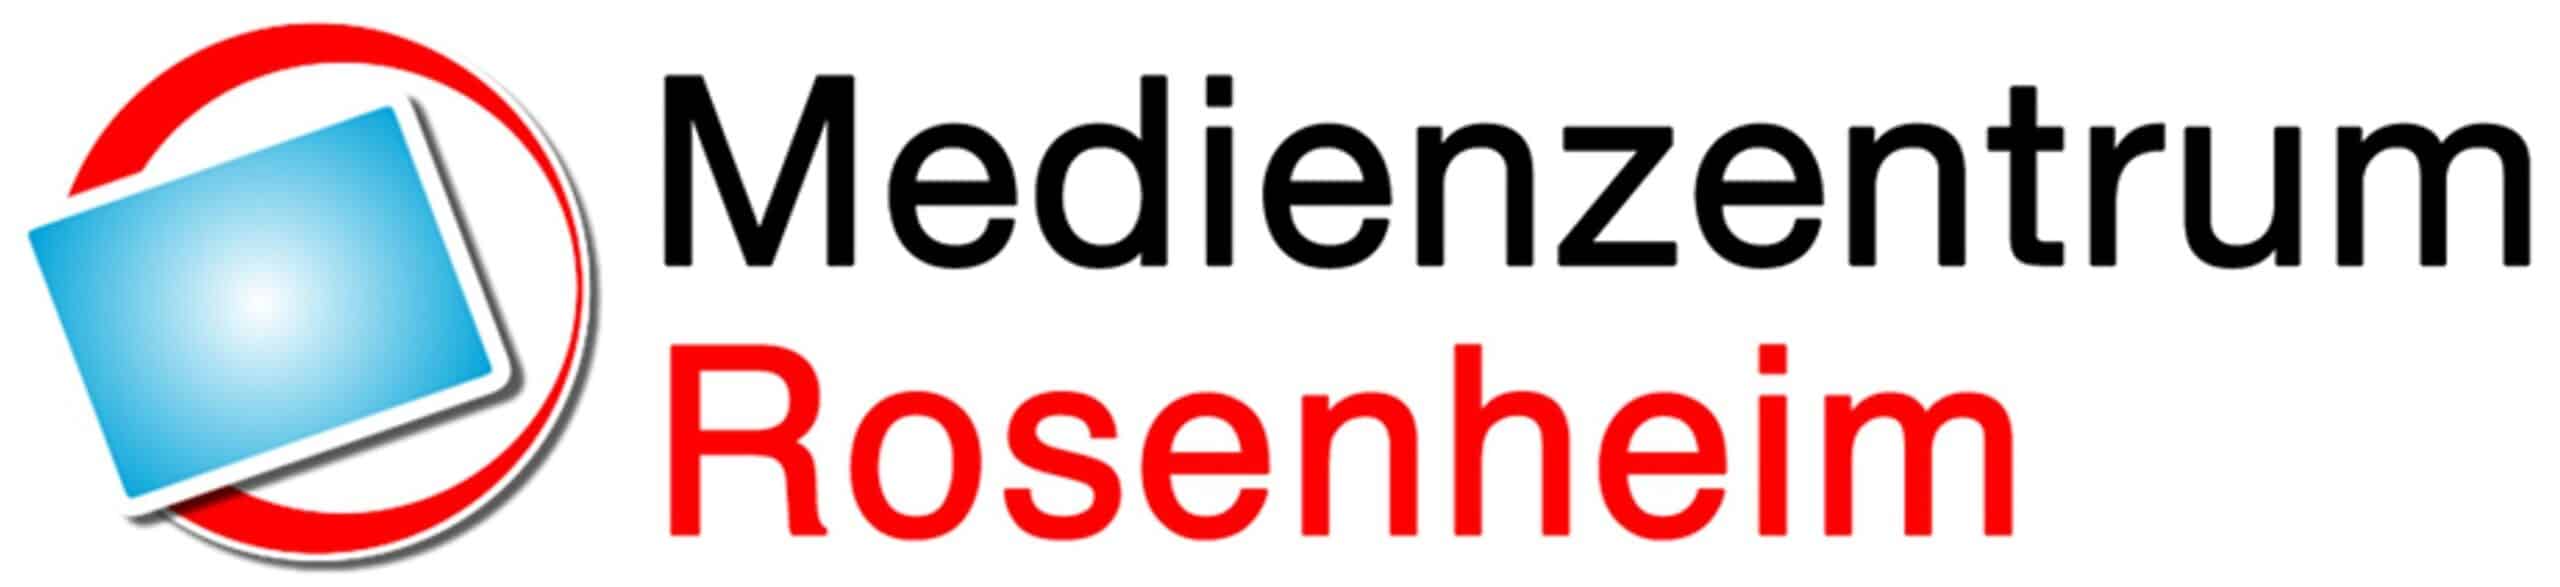 Medienzentrum Rosenheim Logo